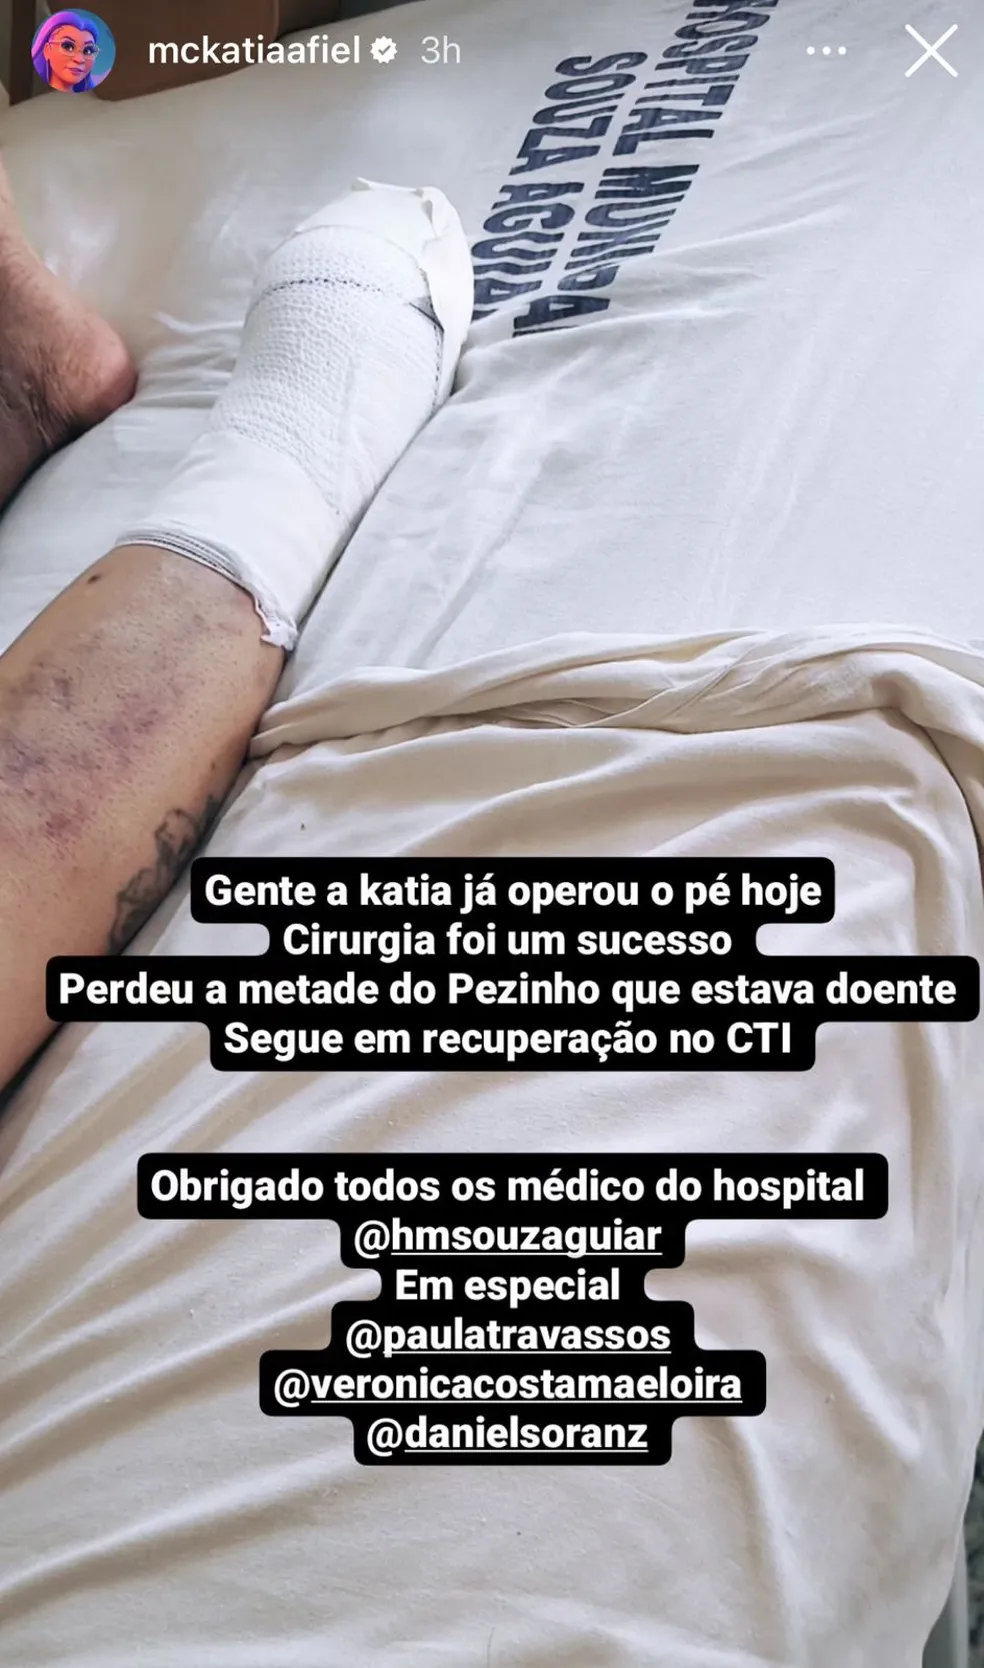 Pioneira do funk, MC Katia mostra pé amputado após cirurgia delicada: "Já operou"